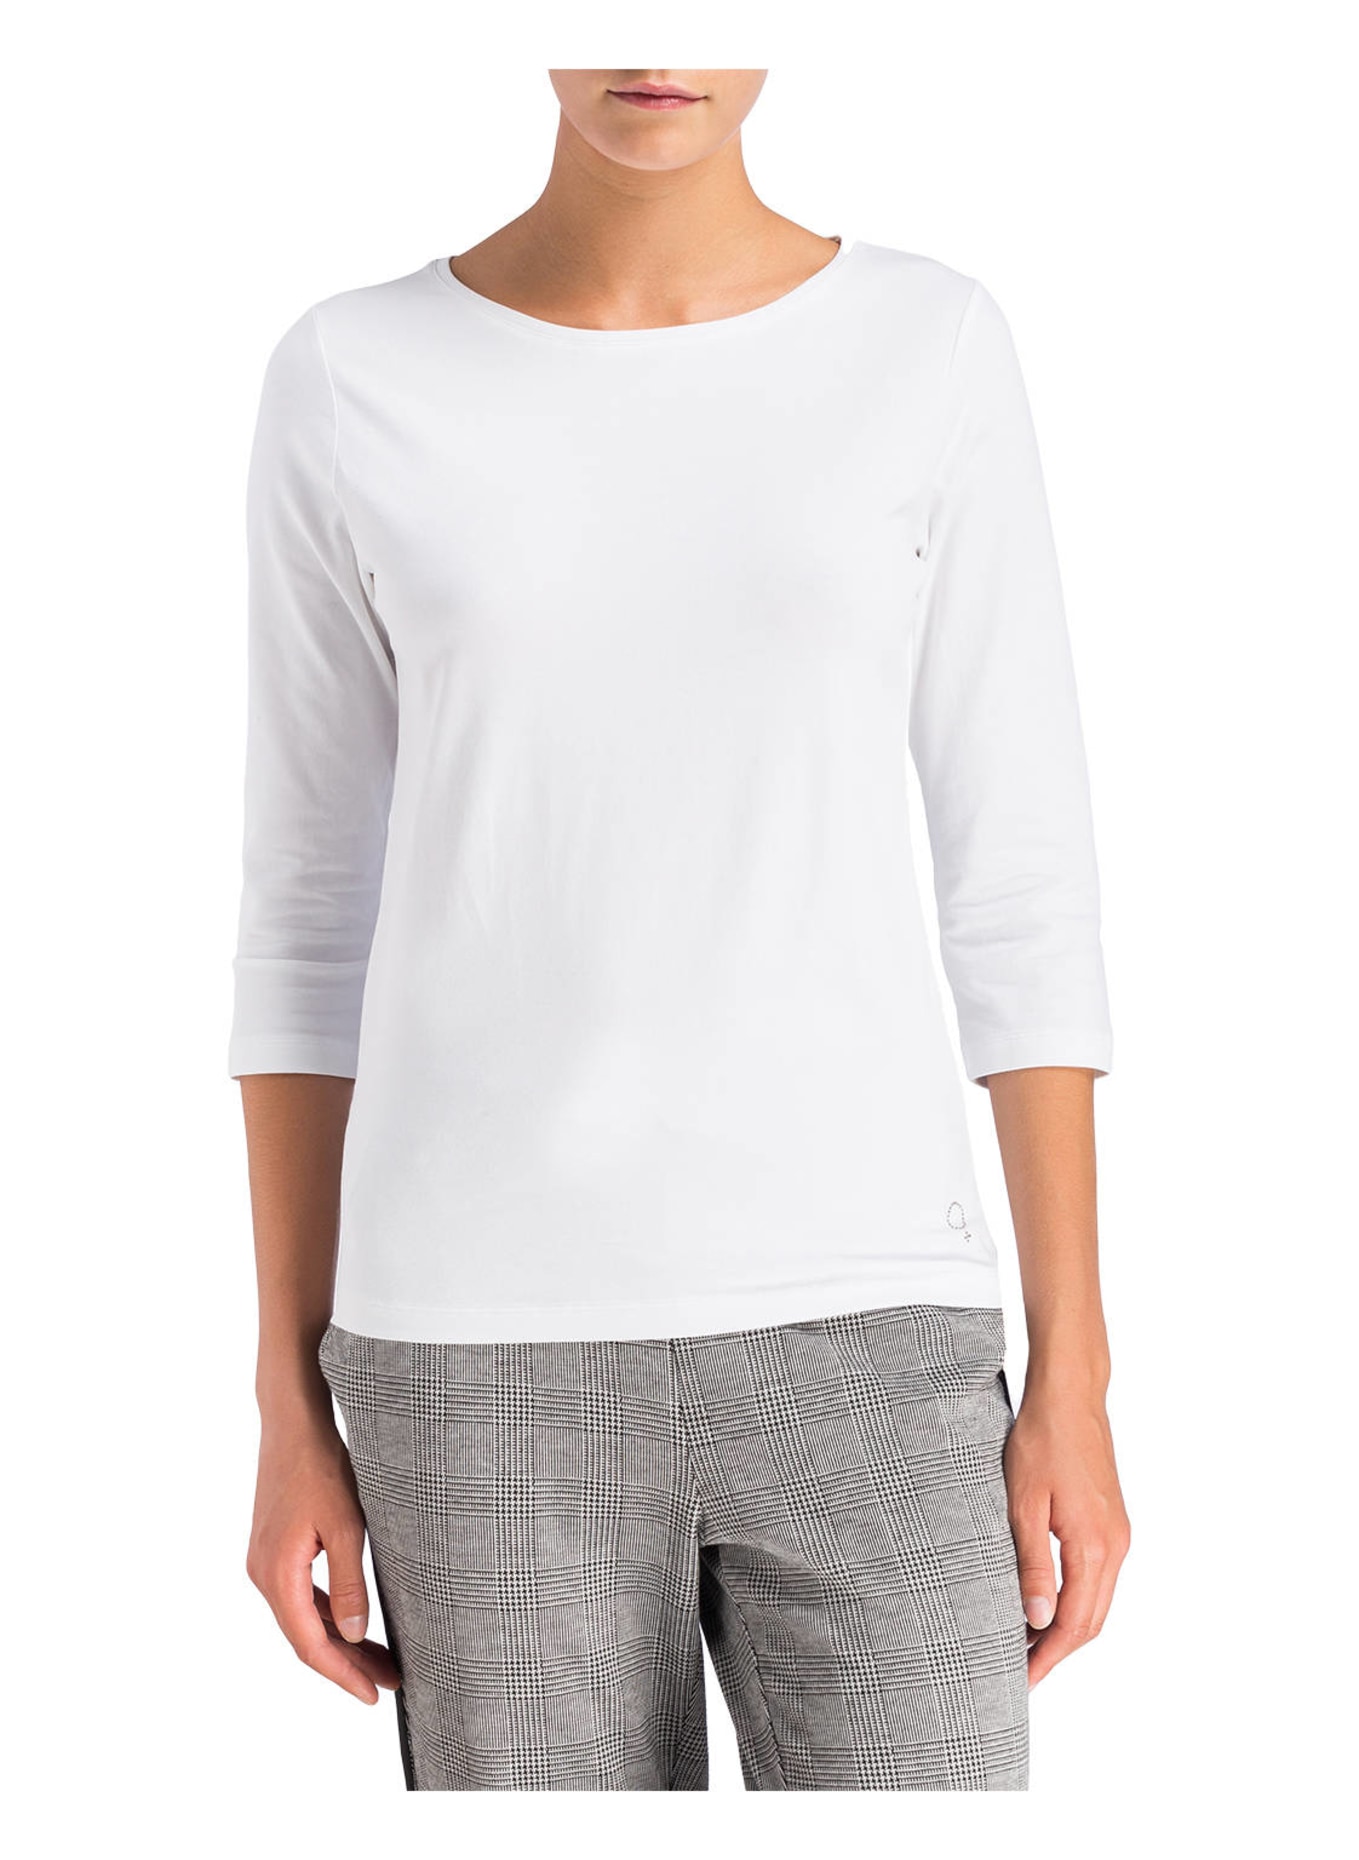 BOVIVA Shirt mit 3/4-Arm, Farbe: 100 WHITE (Bild 2)